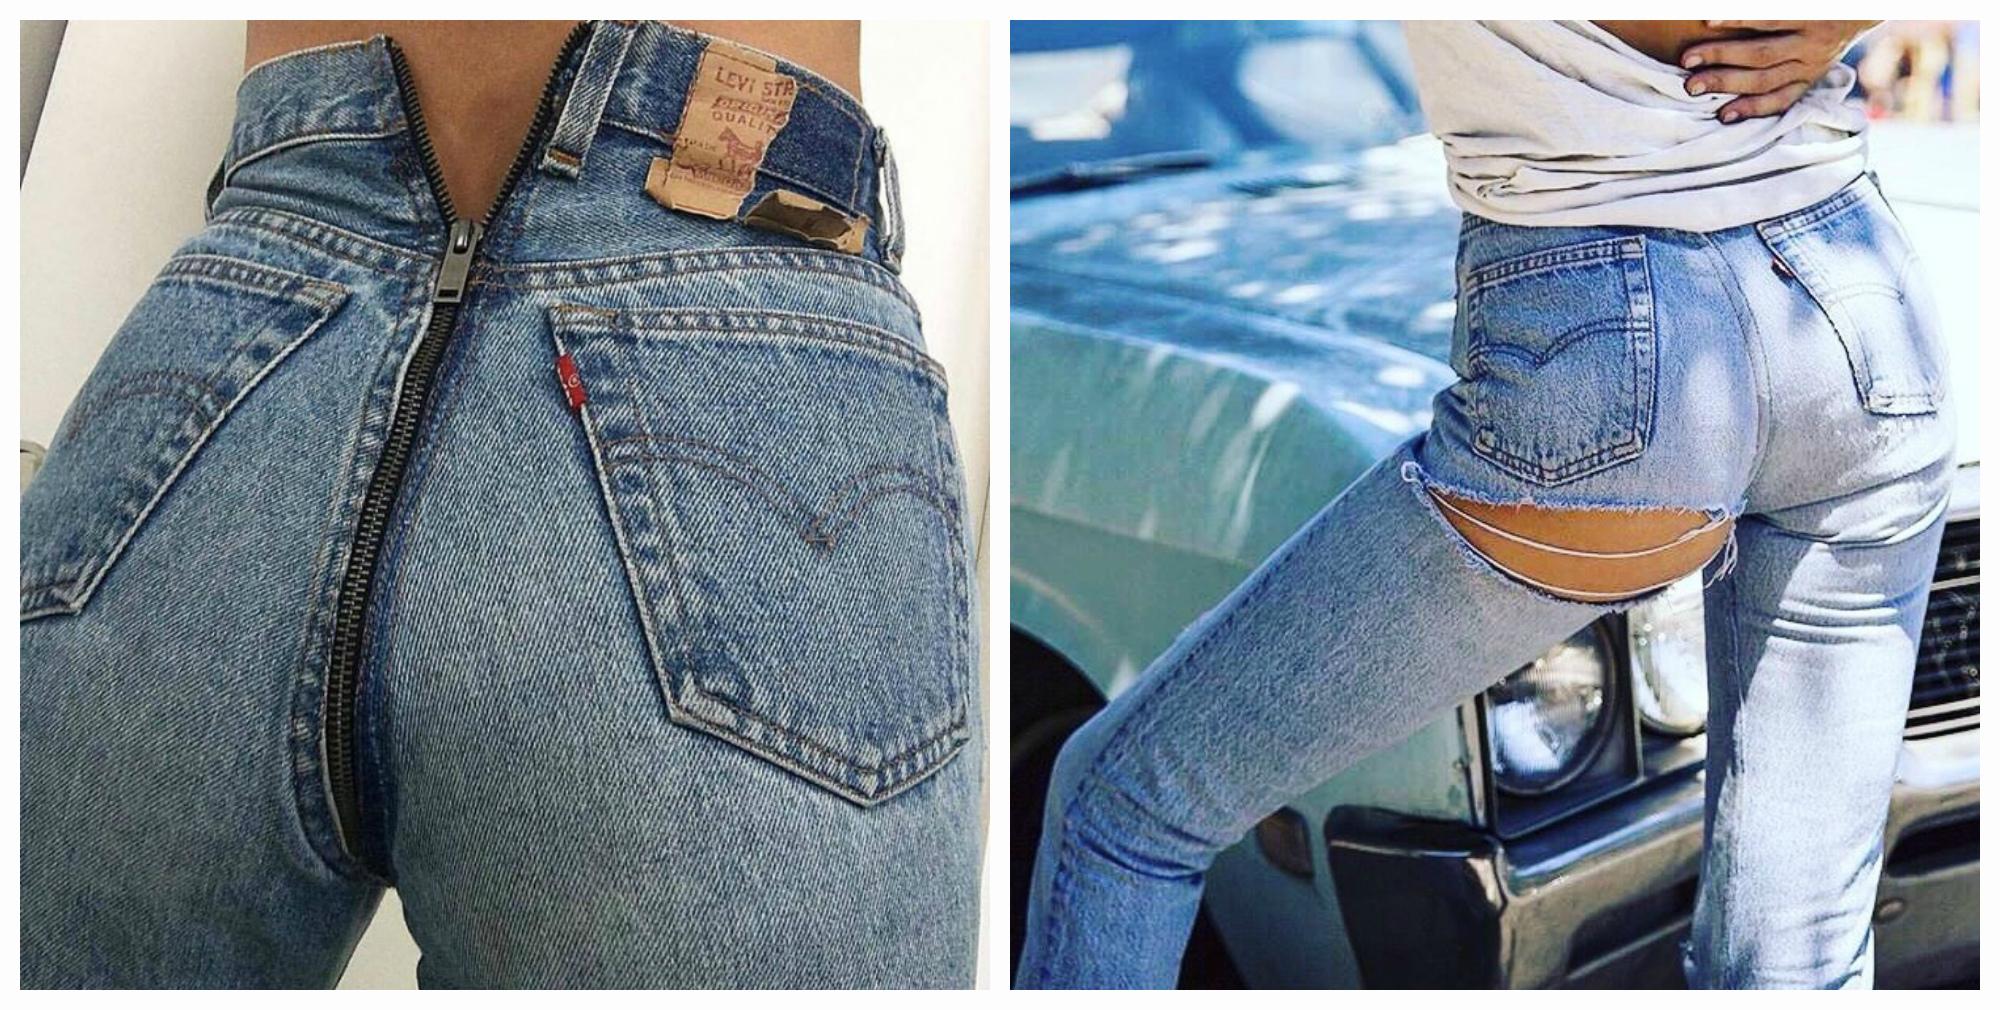 Разработал дырку девушки в джинсах